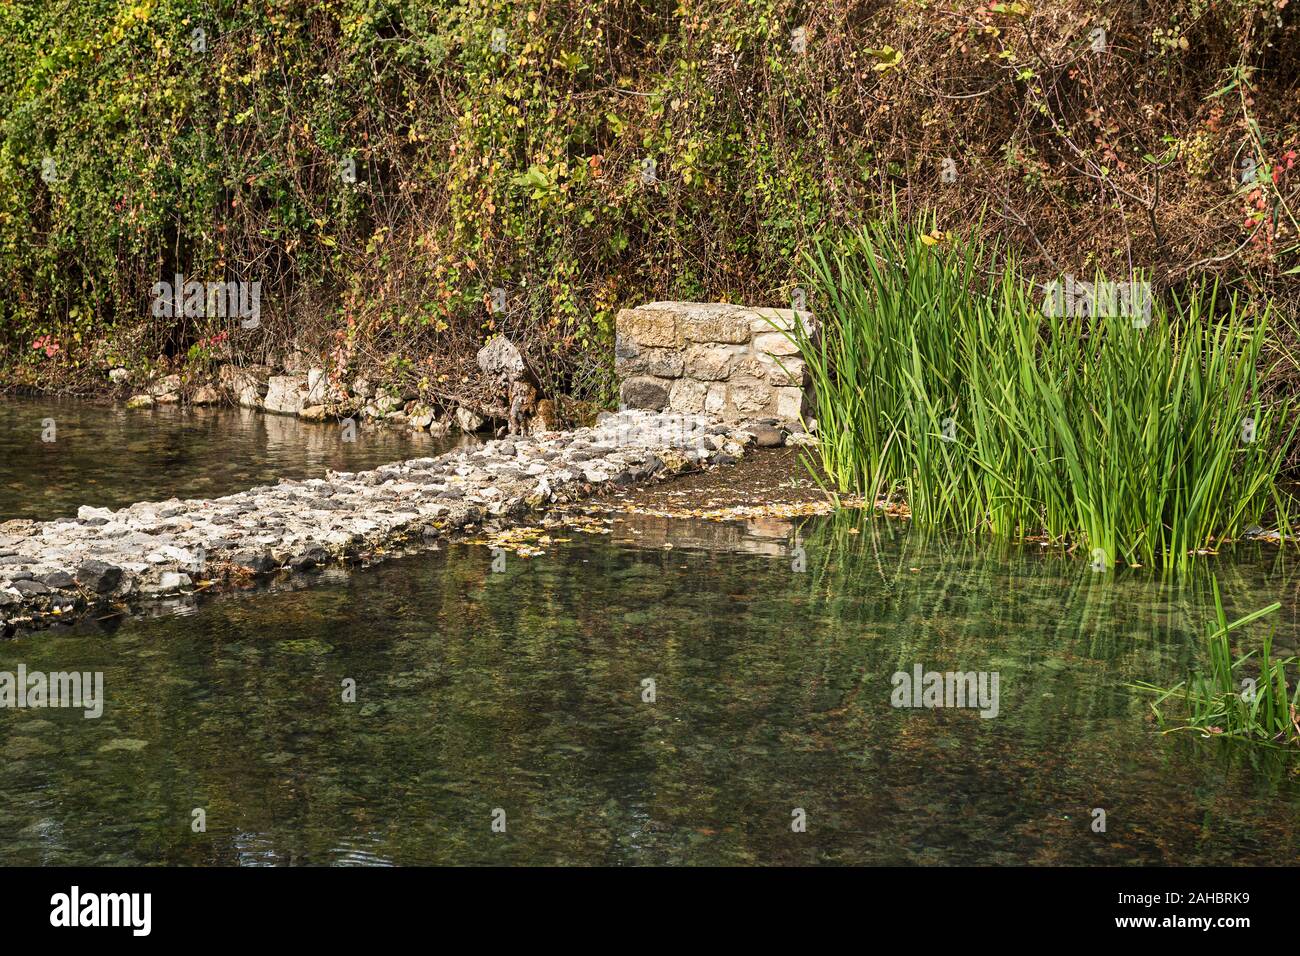 Barrage antique formant une piscine de Banias hermon springs en Israël avec des pierres montrant à travers le cristal de l'eau de source claire et la végétation riveraine Banque D'Images